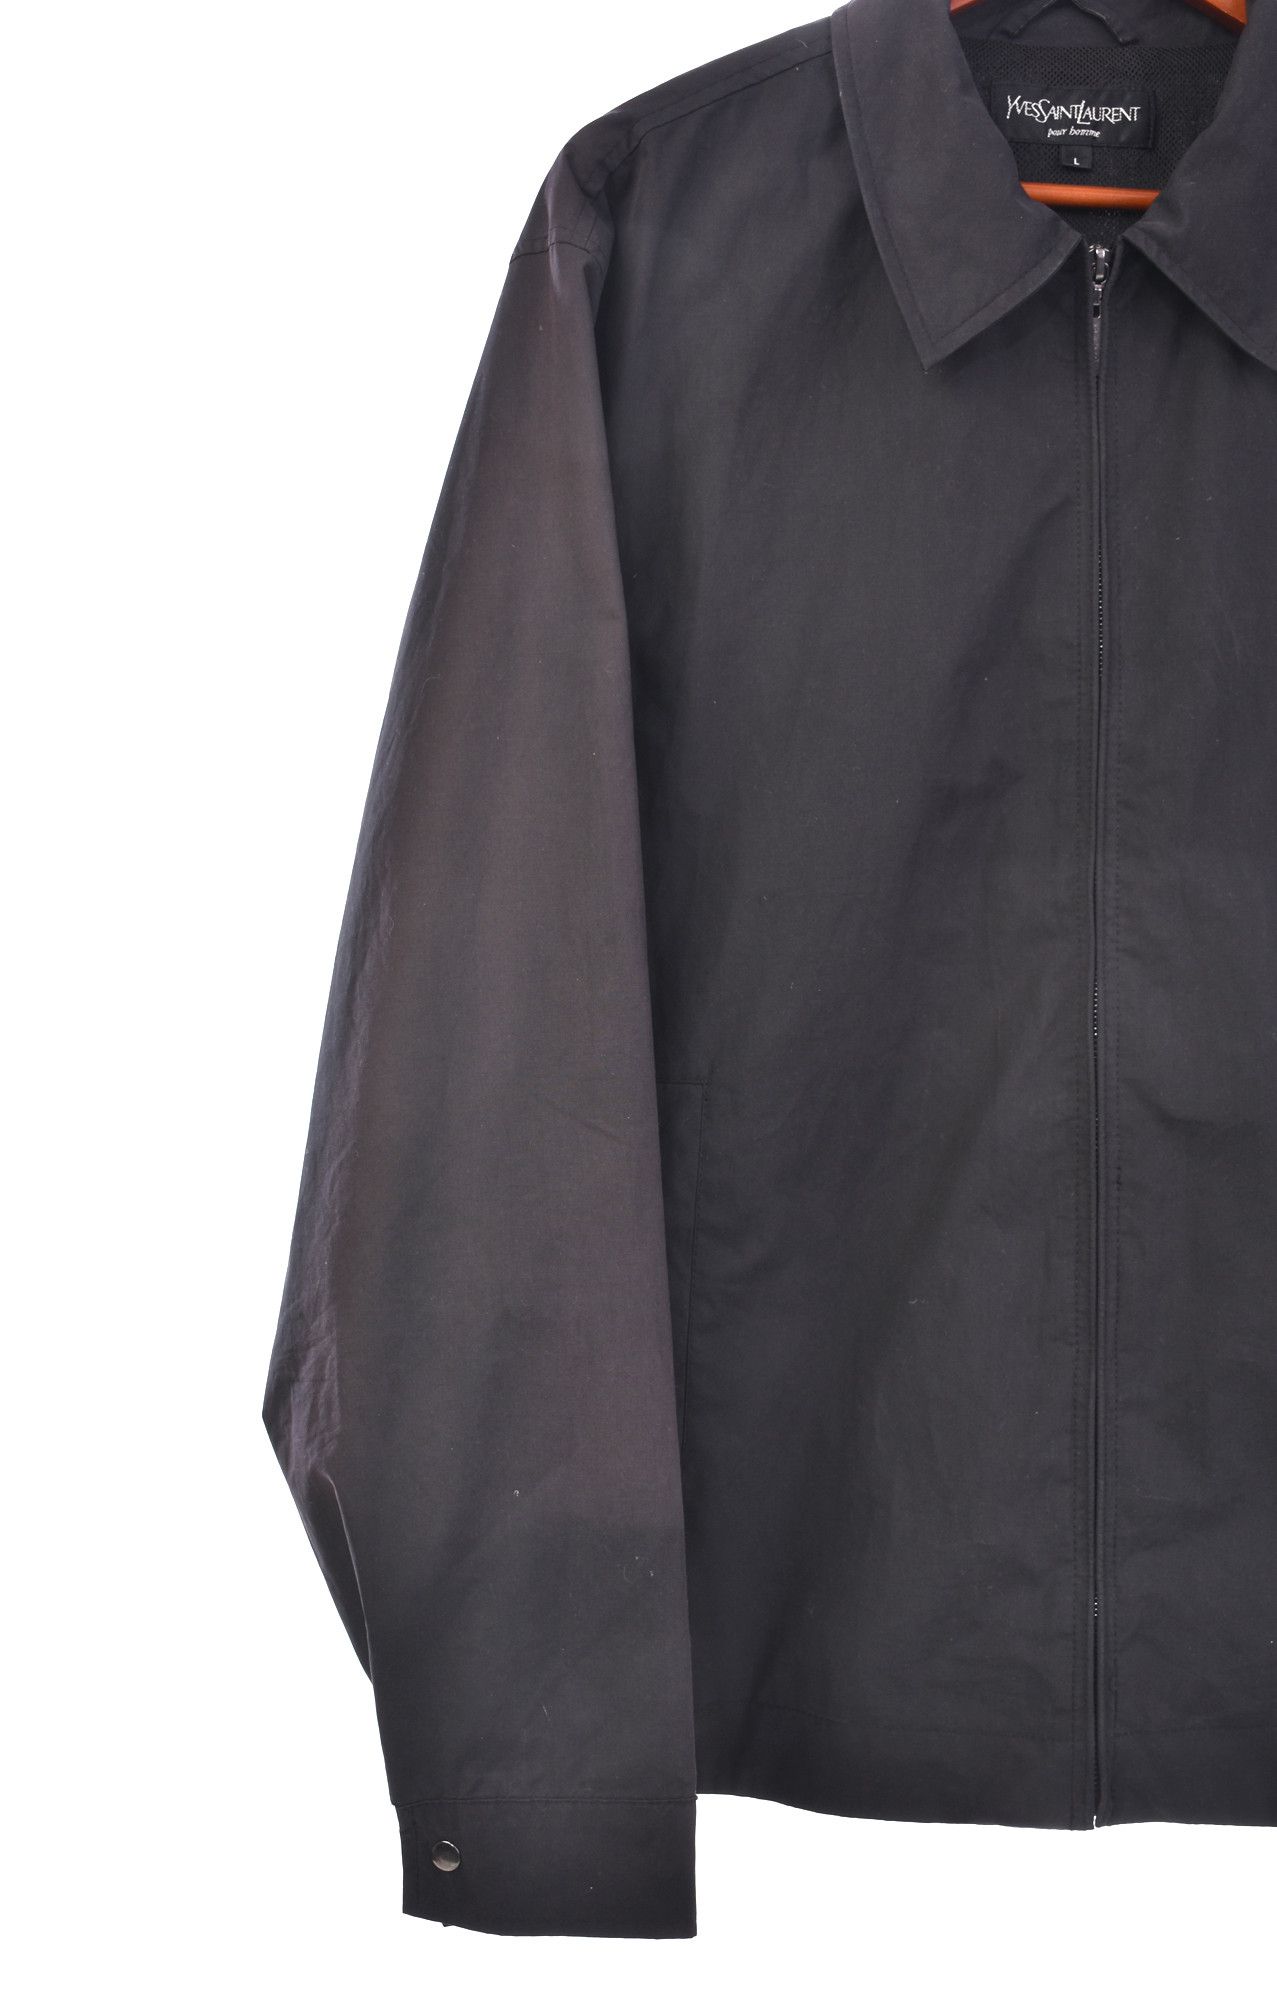 Yves Saint Laurent vintage black harrington jacket Size US L / EU 52-54 / 3 - 2 Preview